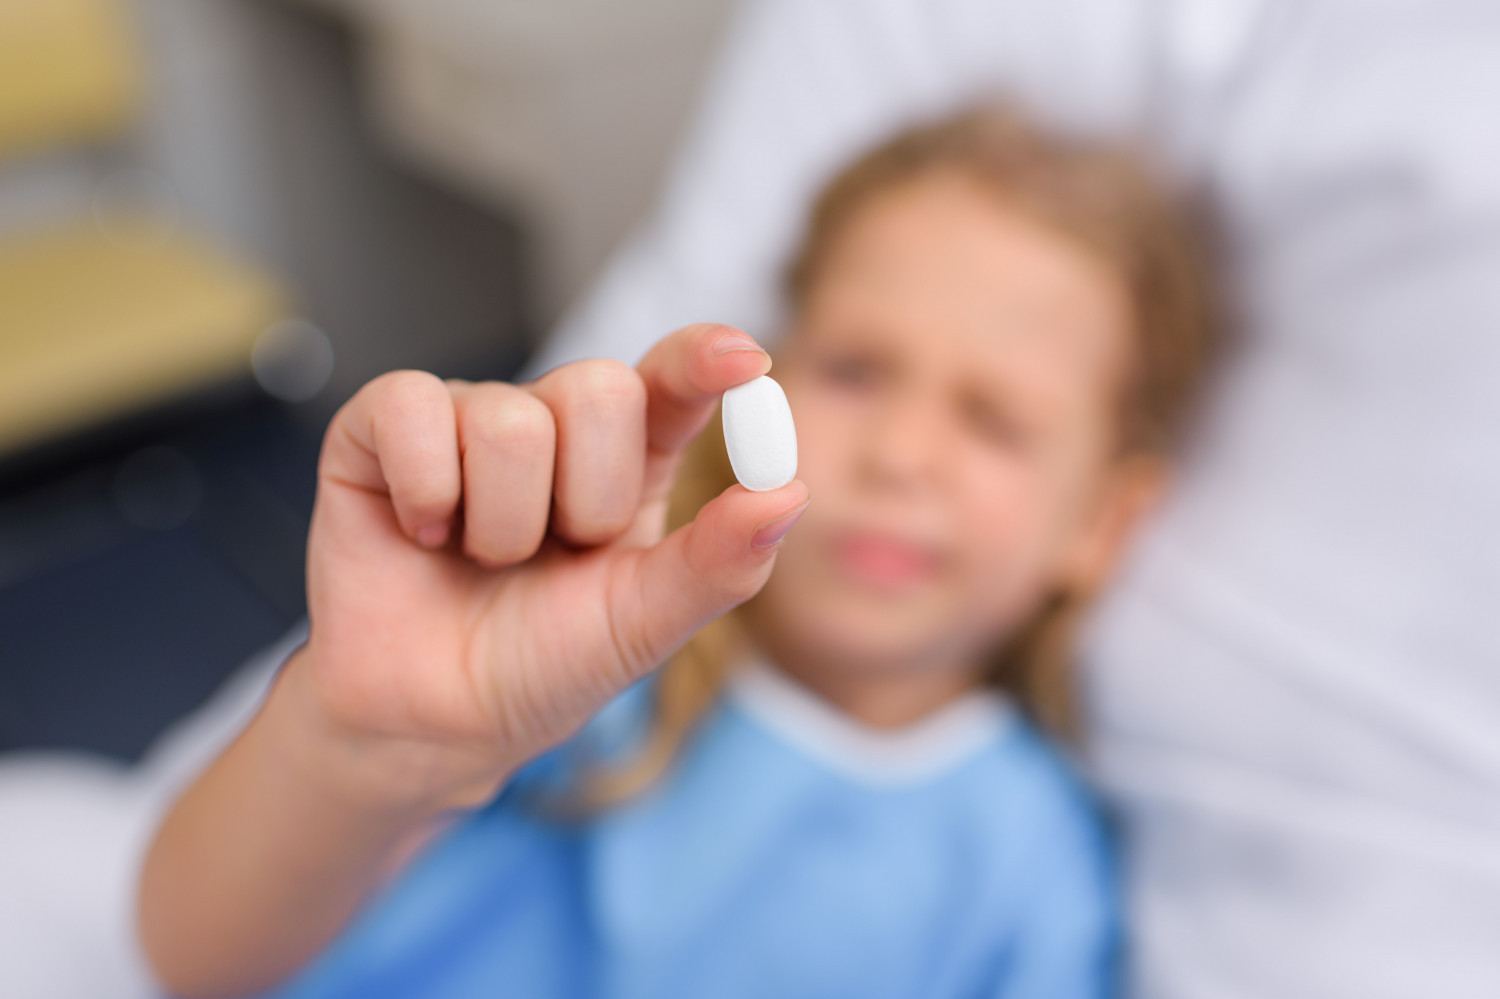 Незарегистрированные лекарства для детей из второй очереди поступят в РФ в 2020 году